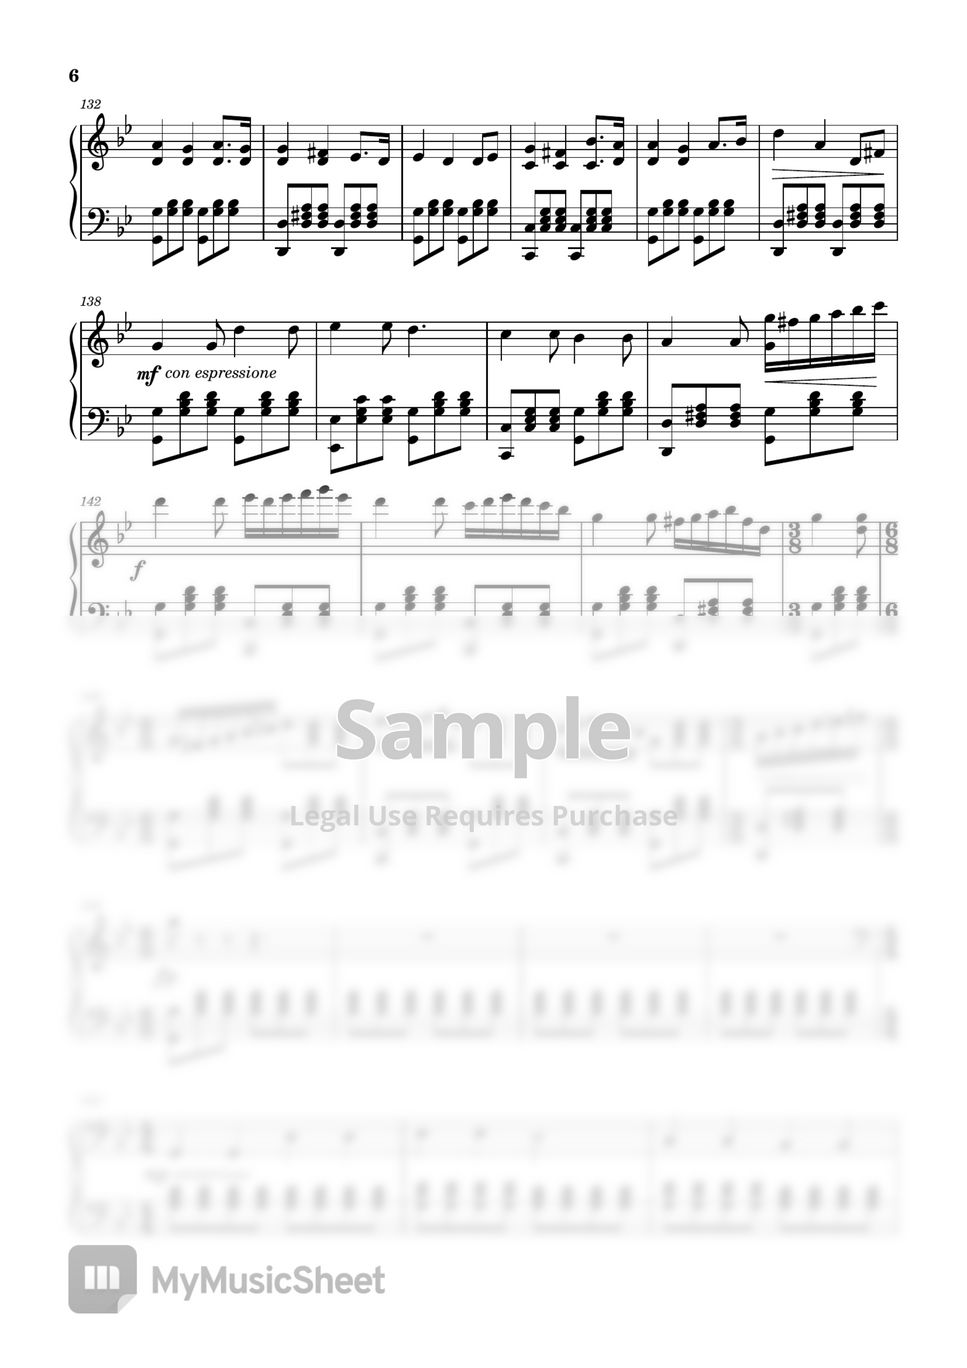 PianoDeuss Twinkle, Twinkle Little Star (Dark Version) Sheet Music (Piano  Solo) in Eb Major - Download & Print - SKU: MN0261609